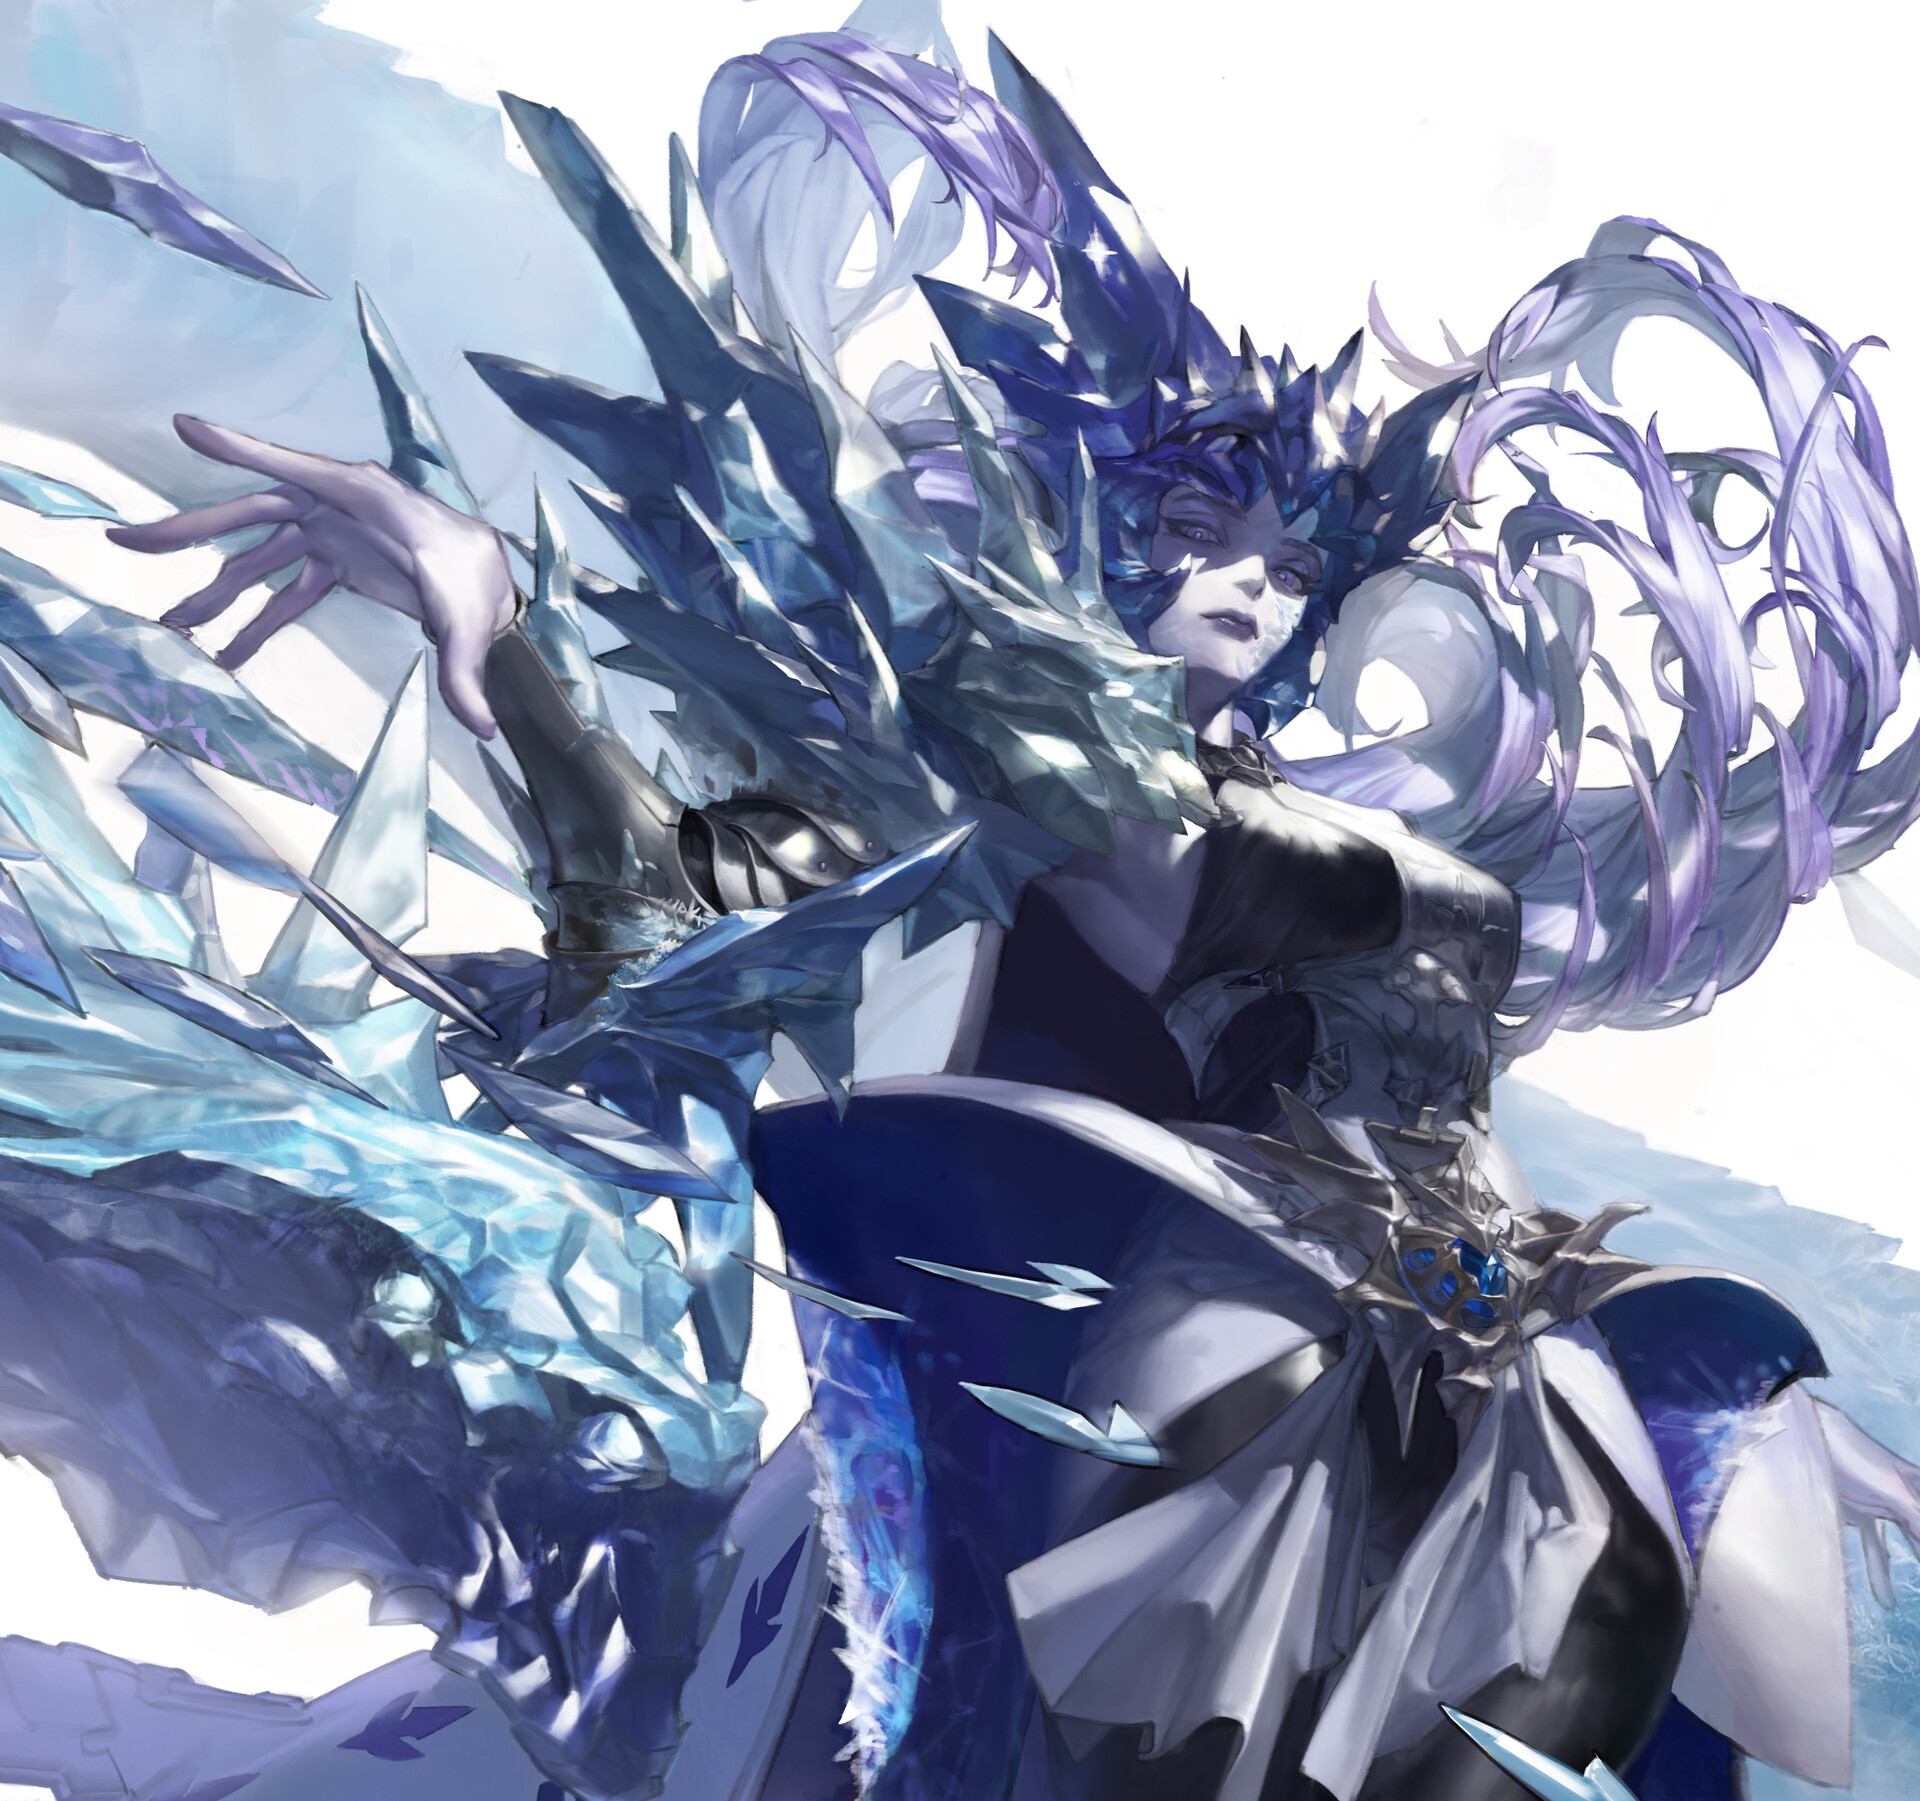 ArtStation - Ice crystal queen